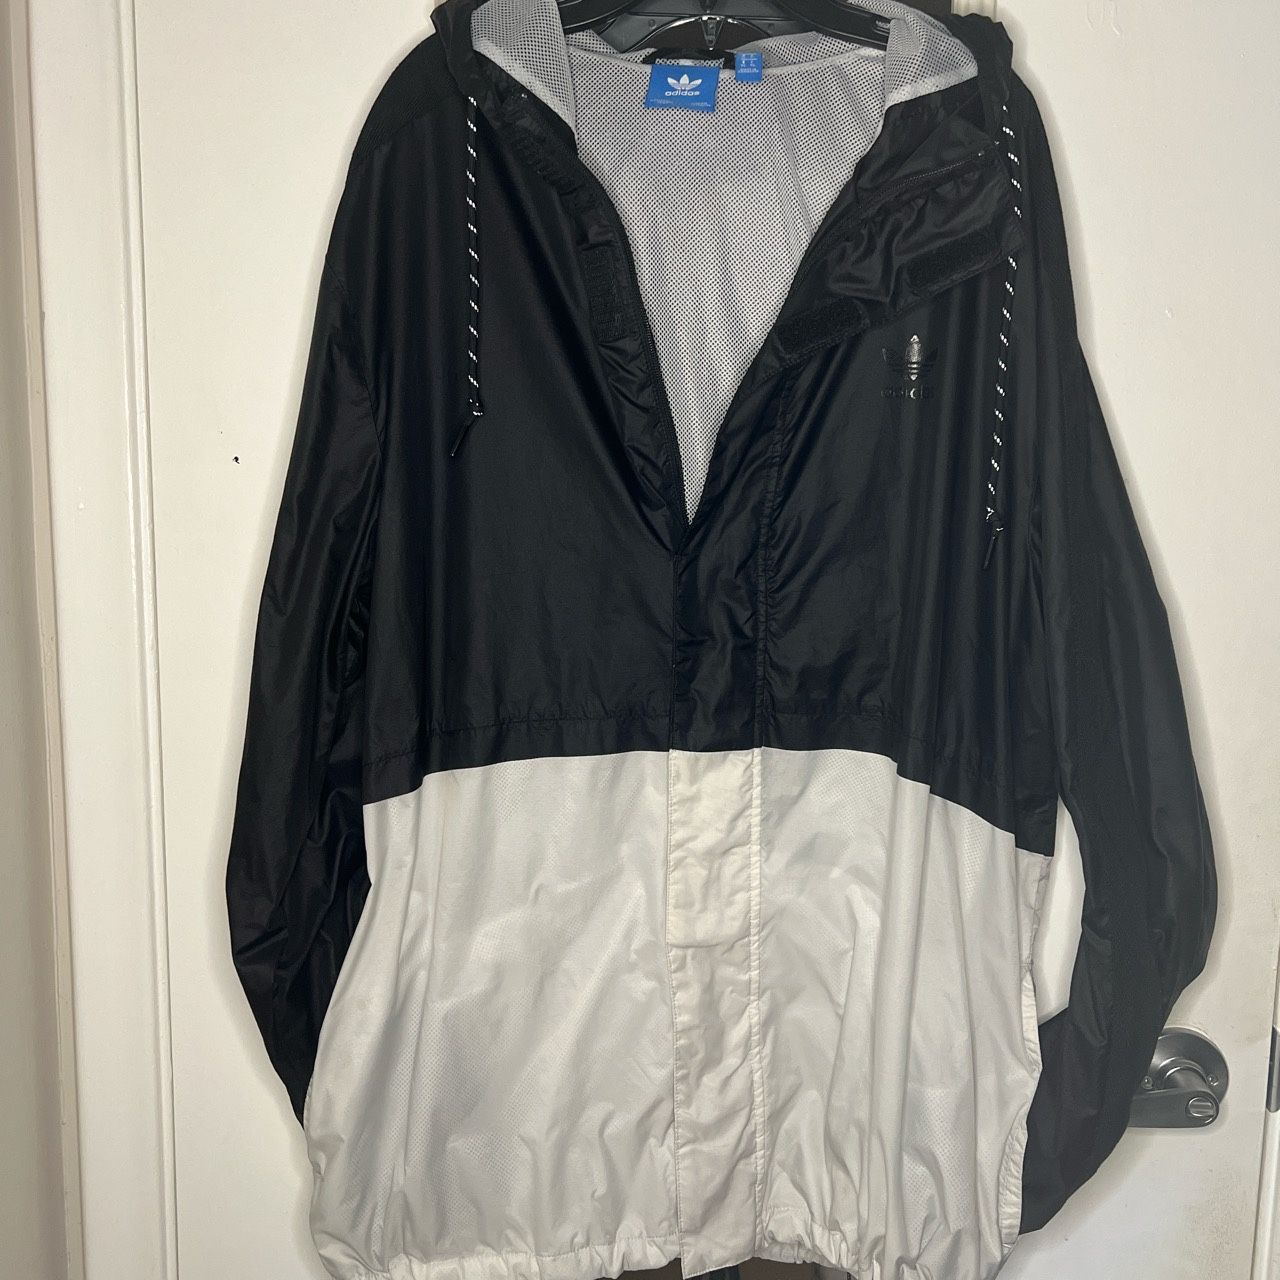 Adidas Windbreaker/Jacket With hoodie